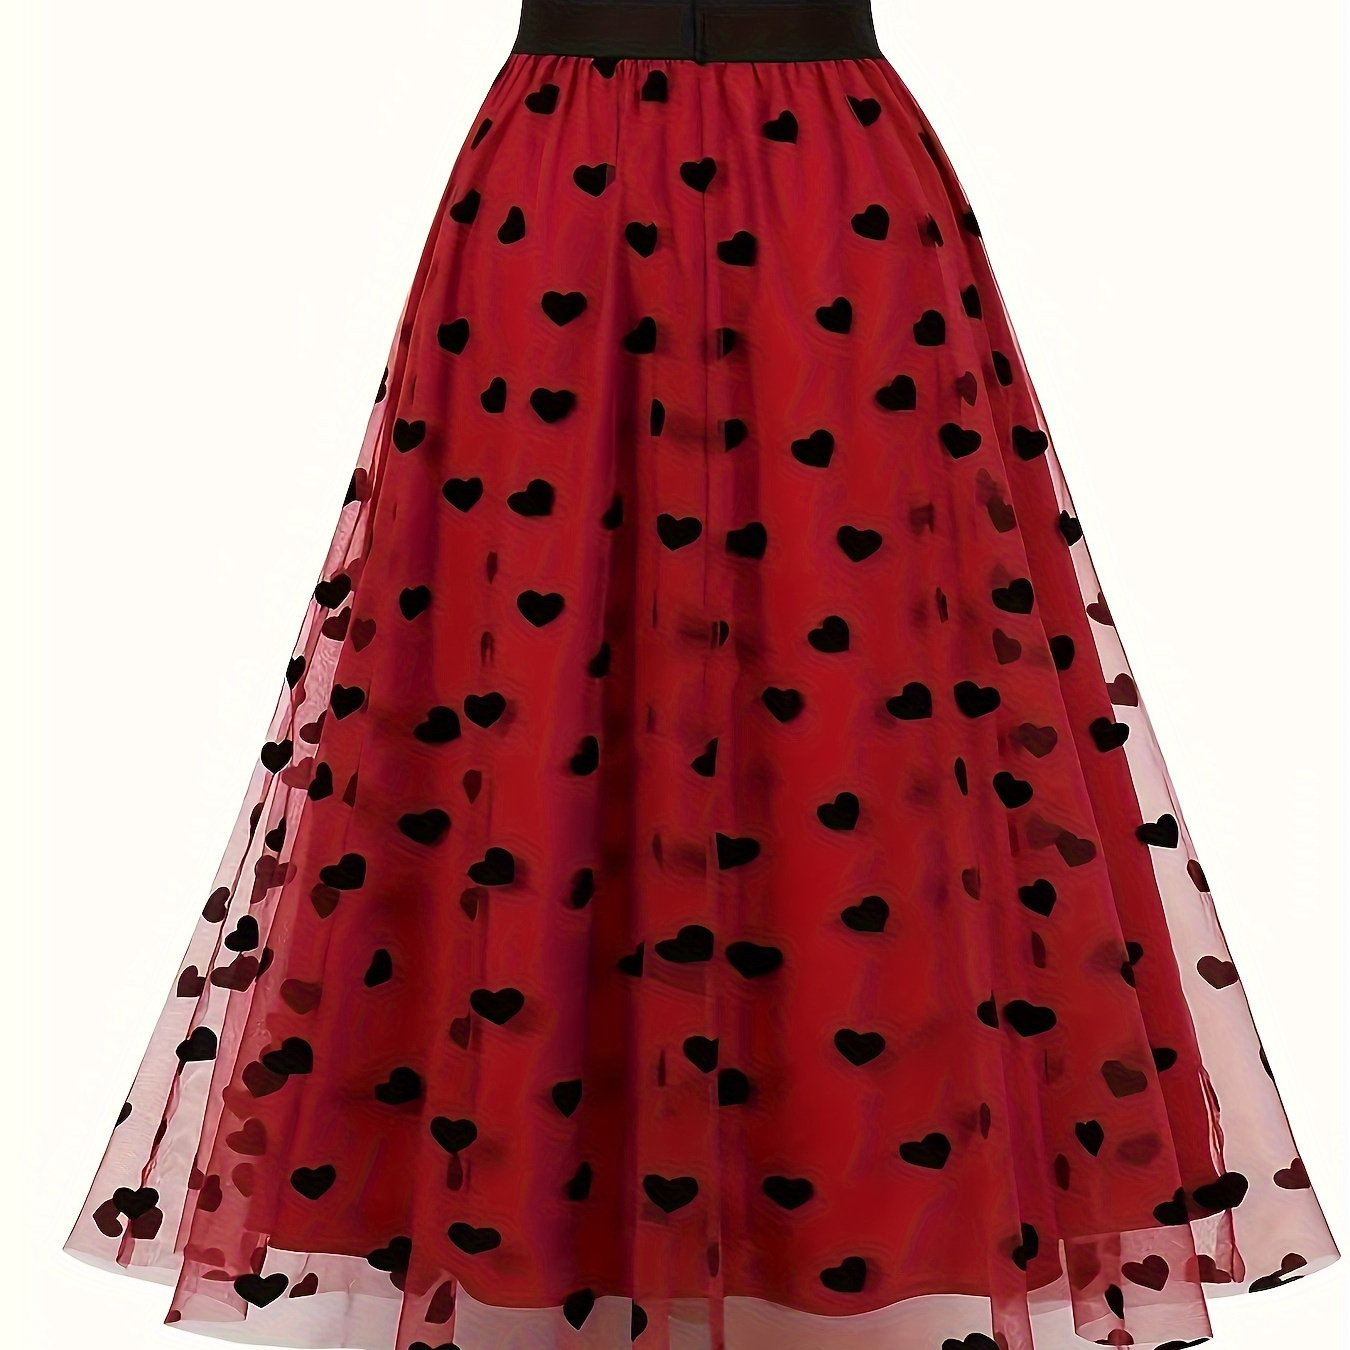 

Heart Print Elastic Waist Tulle Skirt, Casual A-line Skirt For Spring & Summer, Women's Clothing